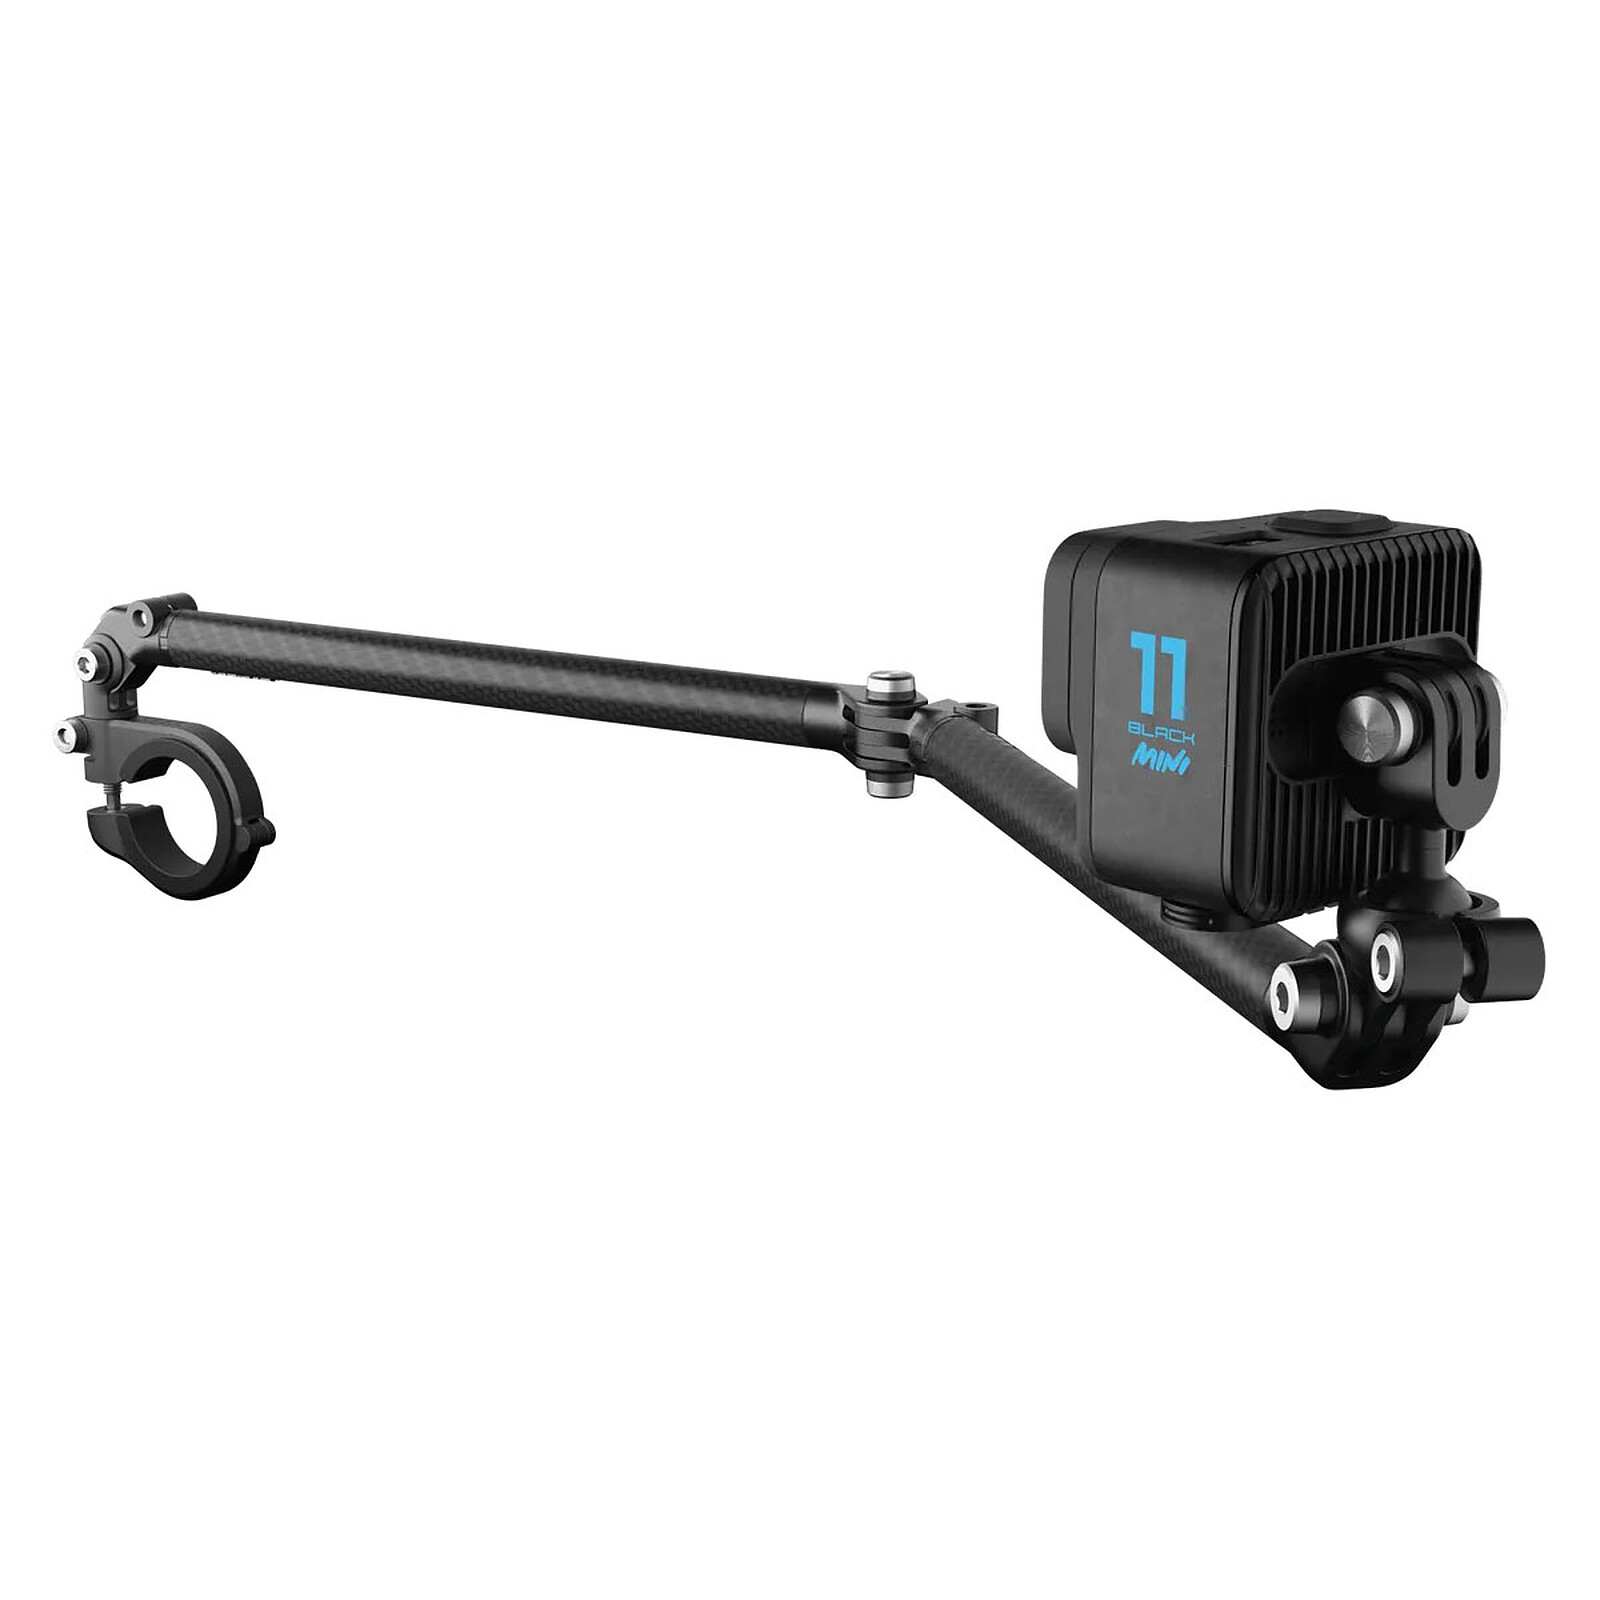 Soporte para brazo y barra GoPro - Accesorios cámara deportiva - LDLC